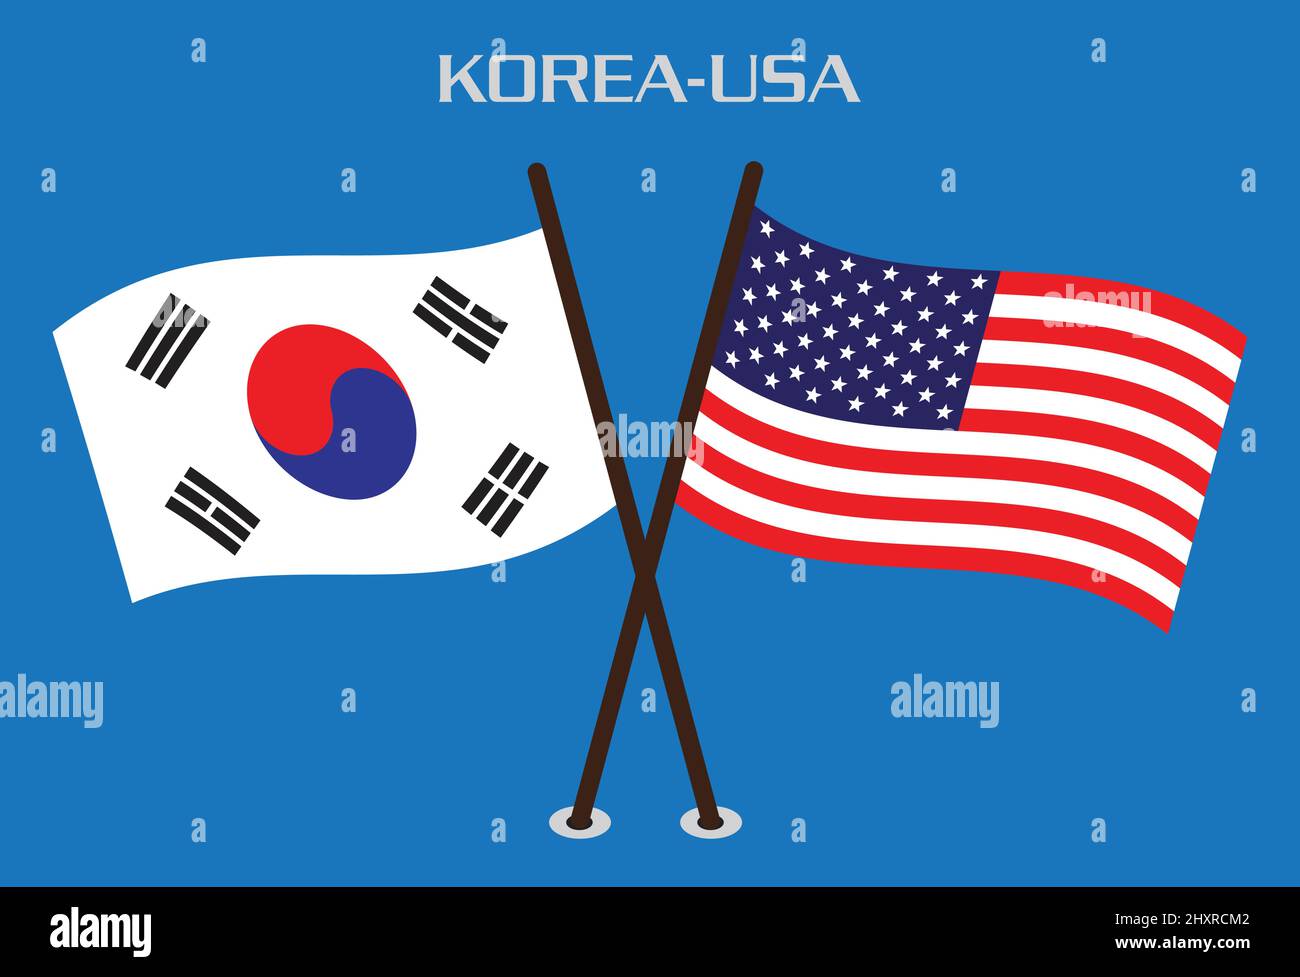 Drapeau de l'amitié des États-Unis en Corée Illustration de Vecteur